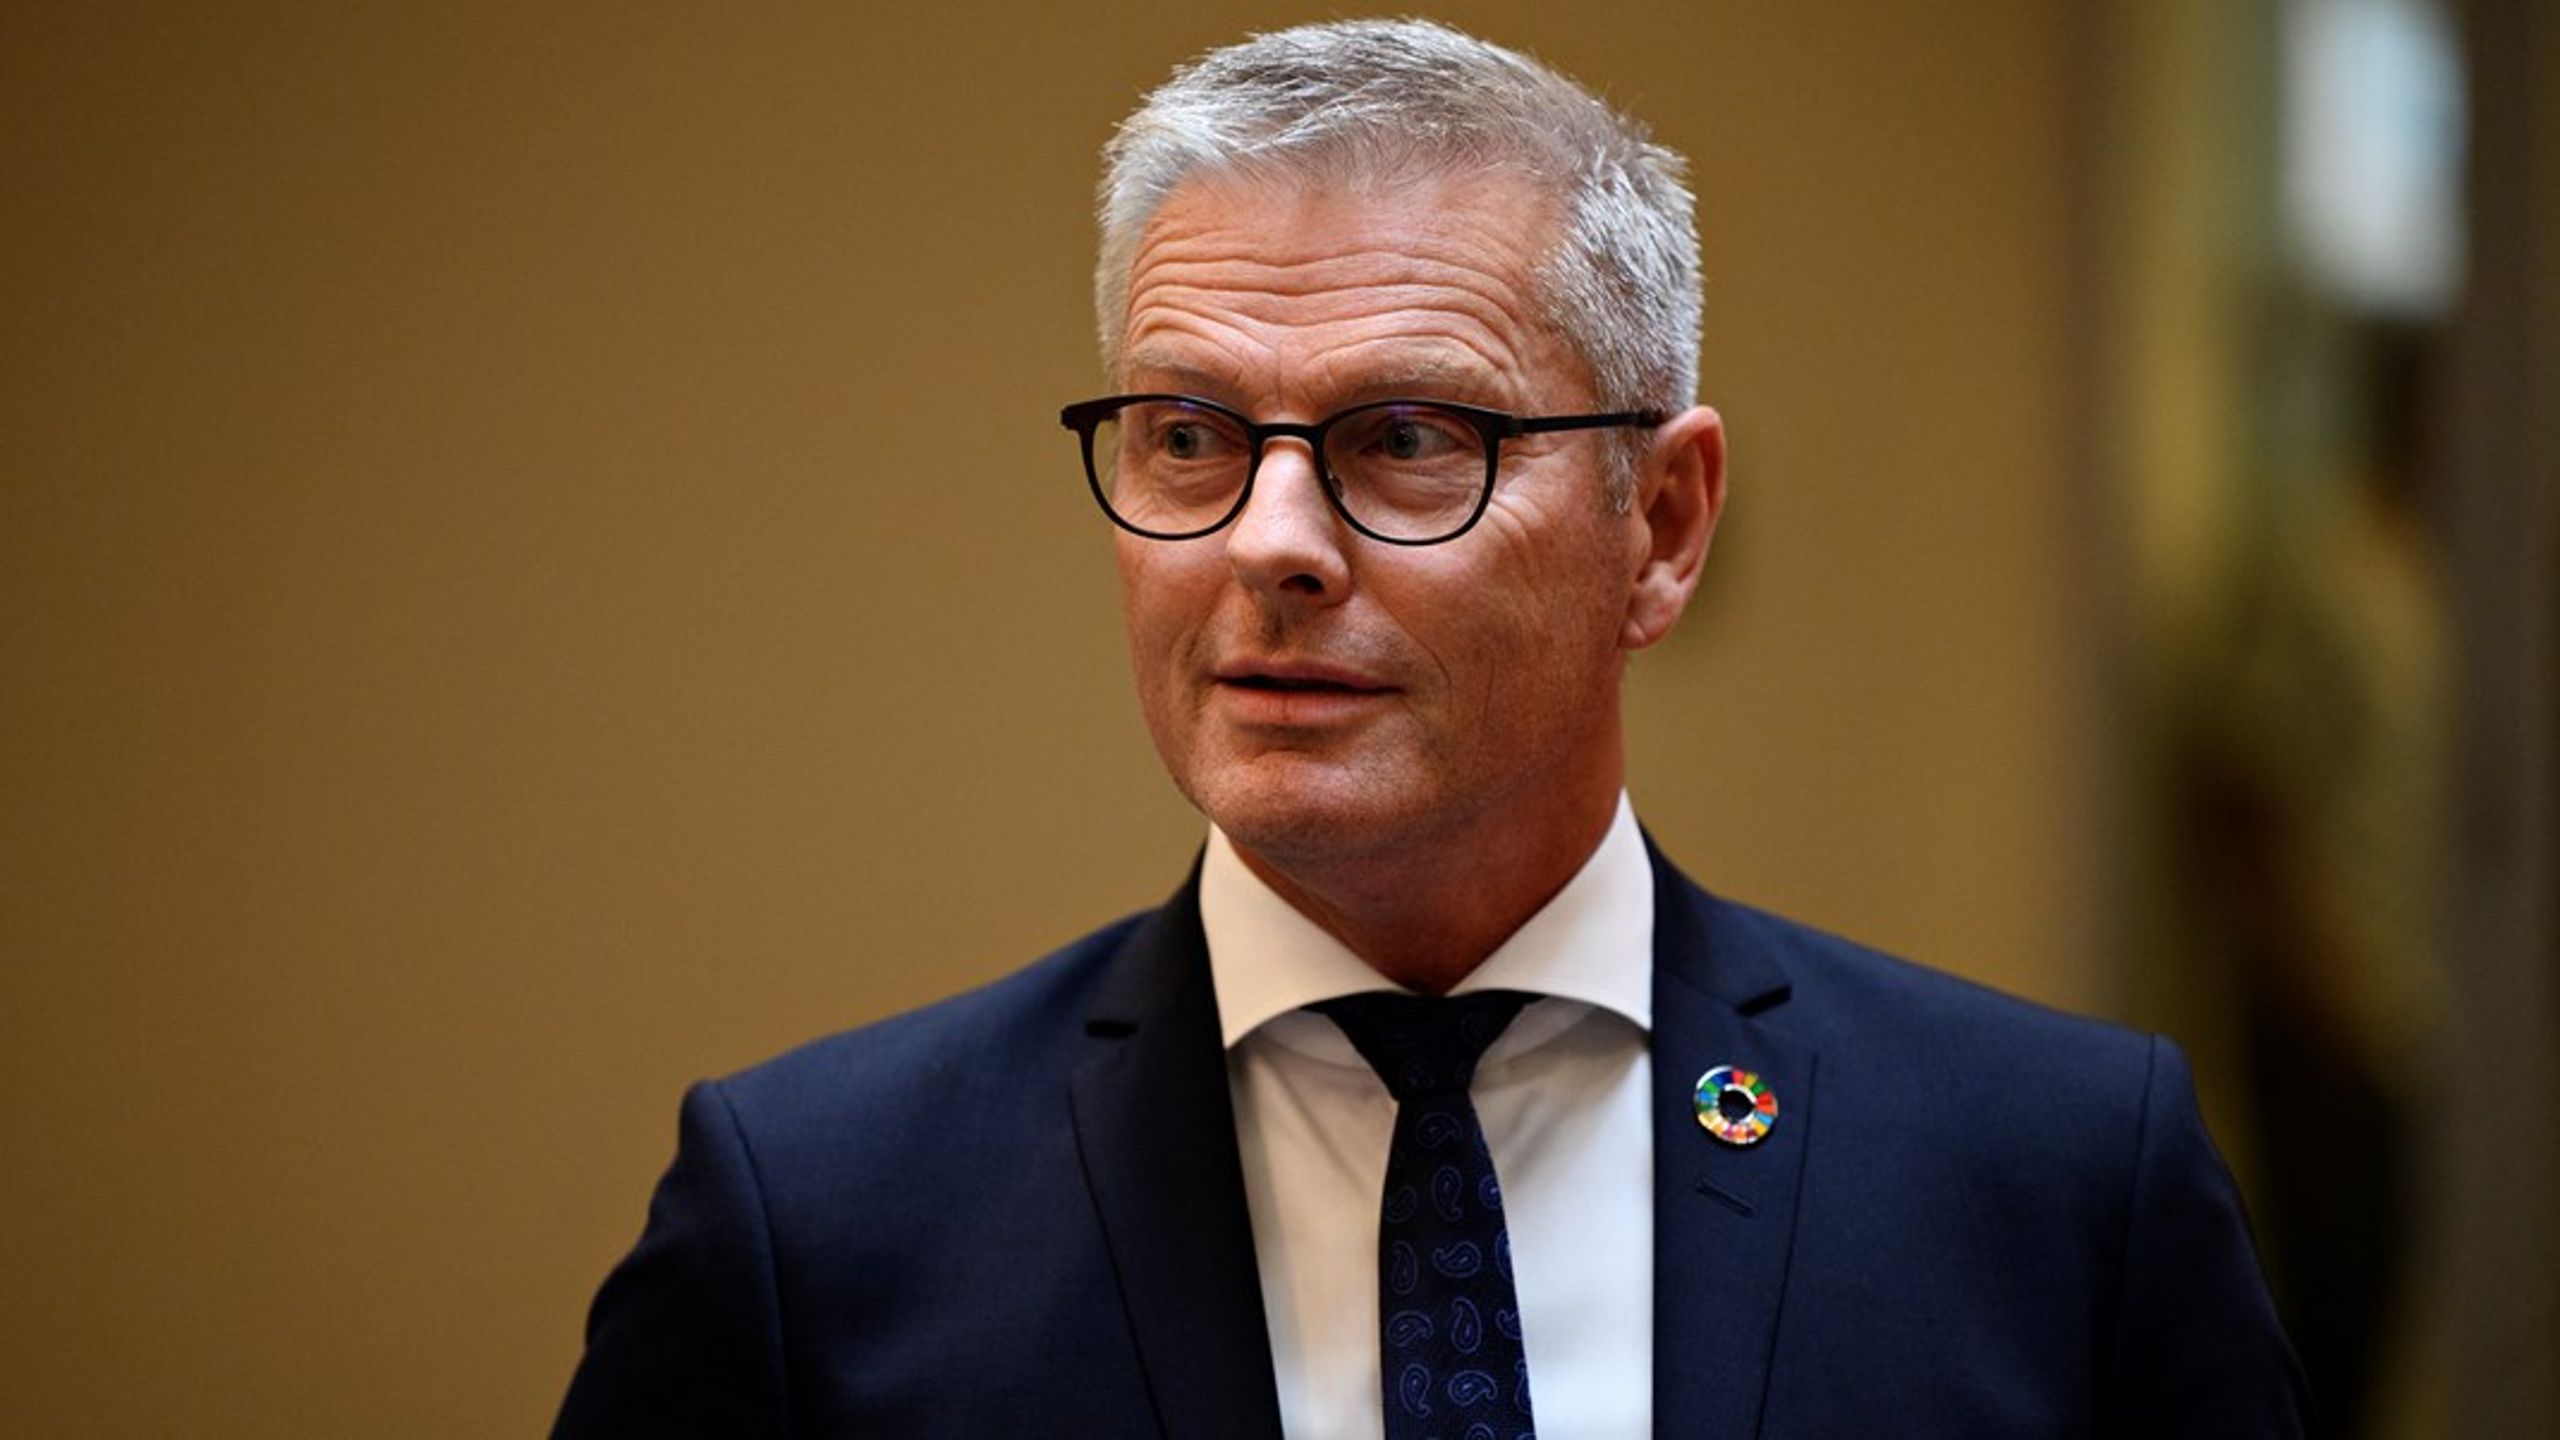 Udviklingsminister Flemming Møller Mortensen (S) har nedsat et ungepanel, der skal give input til Danmarks udviklingssamarbejde.